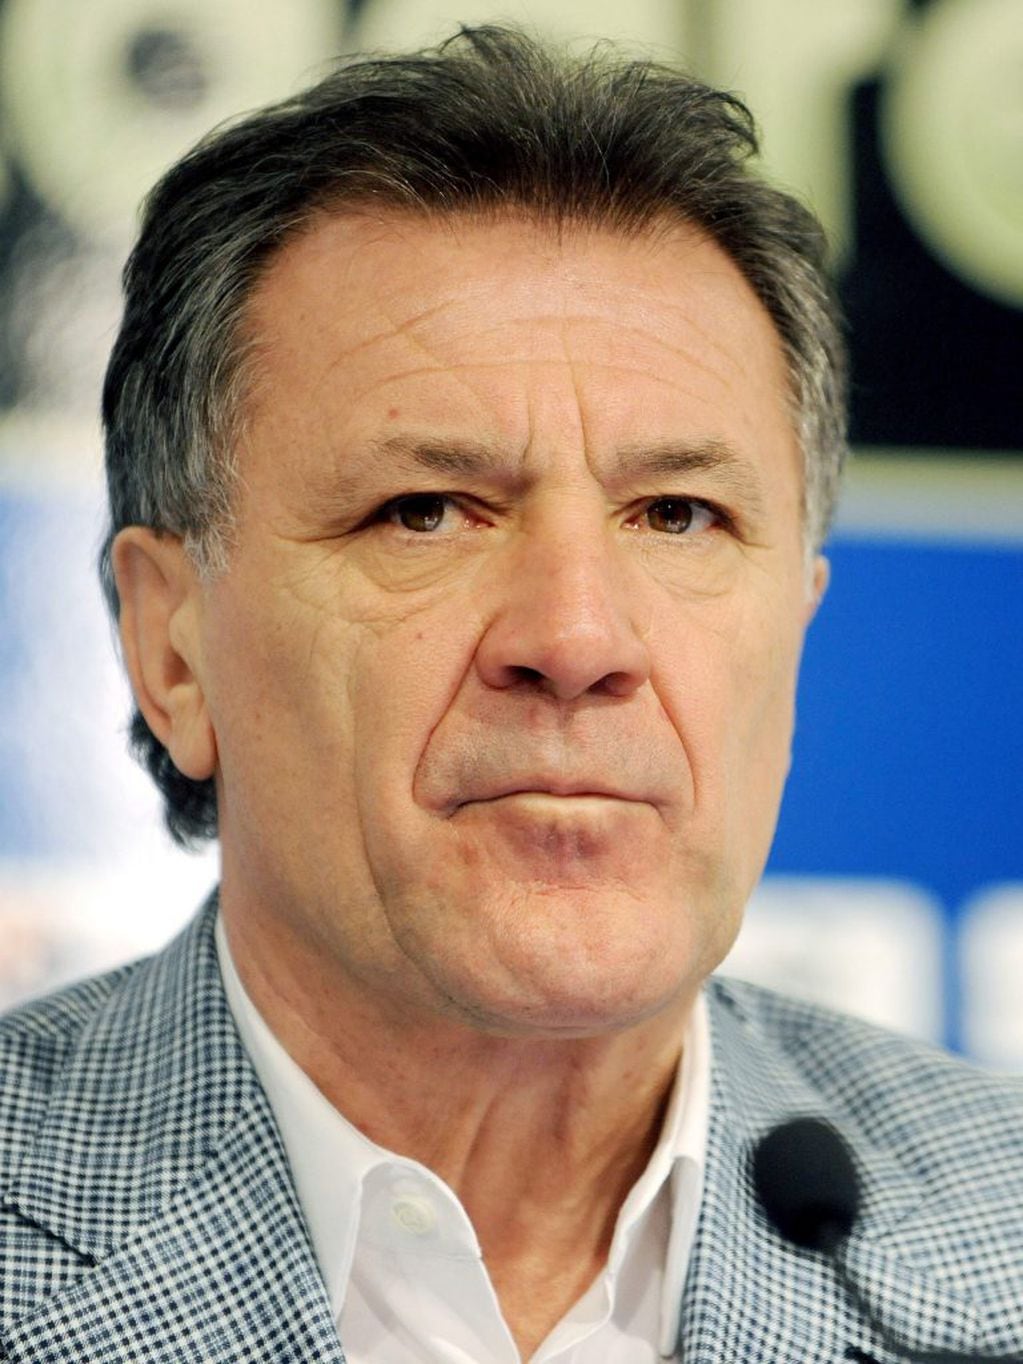 Zdravko Mamic, el expresidente de la Federación Croata de Fútbol. / AFP / STR